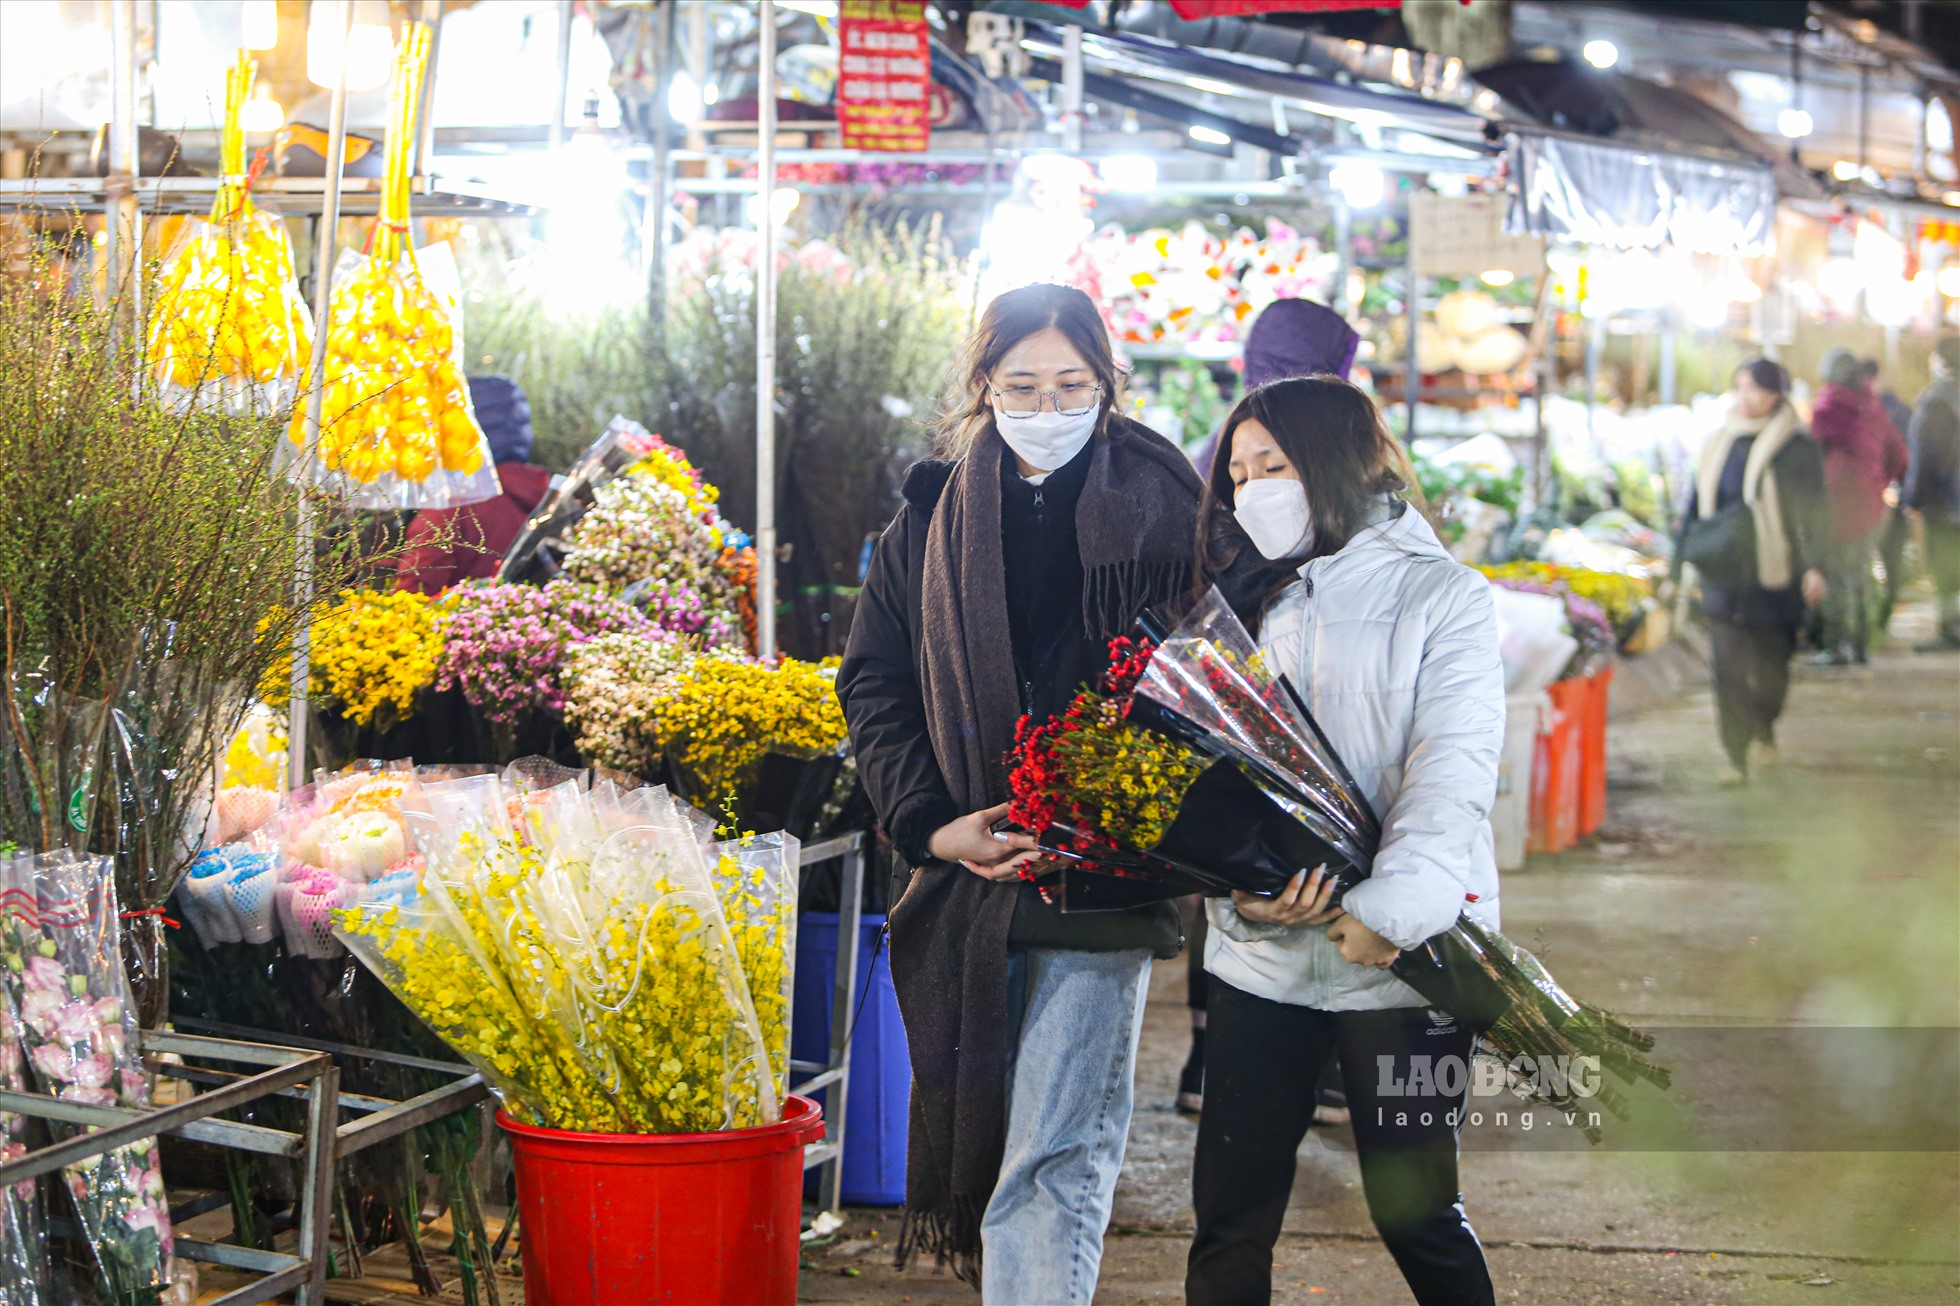 Hoa ở chợ Quảng An được đánh giá là đẹp và tươi hơn hoa các chợ khác trong thành phố, chuyển từ khắp các làng hoa lân cận như Tây Tựu, Đông Anh... và cả từ những nơi xa xôi về như Đà Lạt, TP.HCM.. nên được nhiều người ưa chuộng.